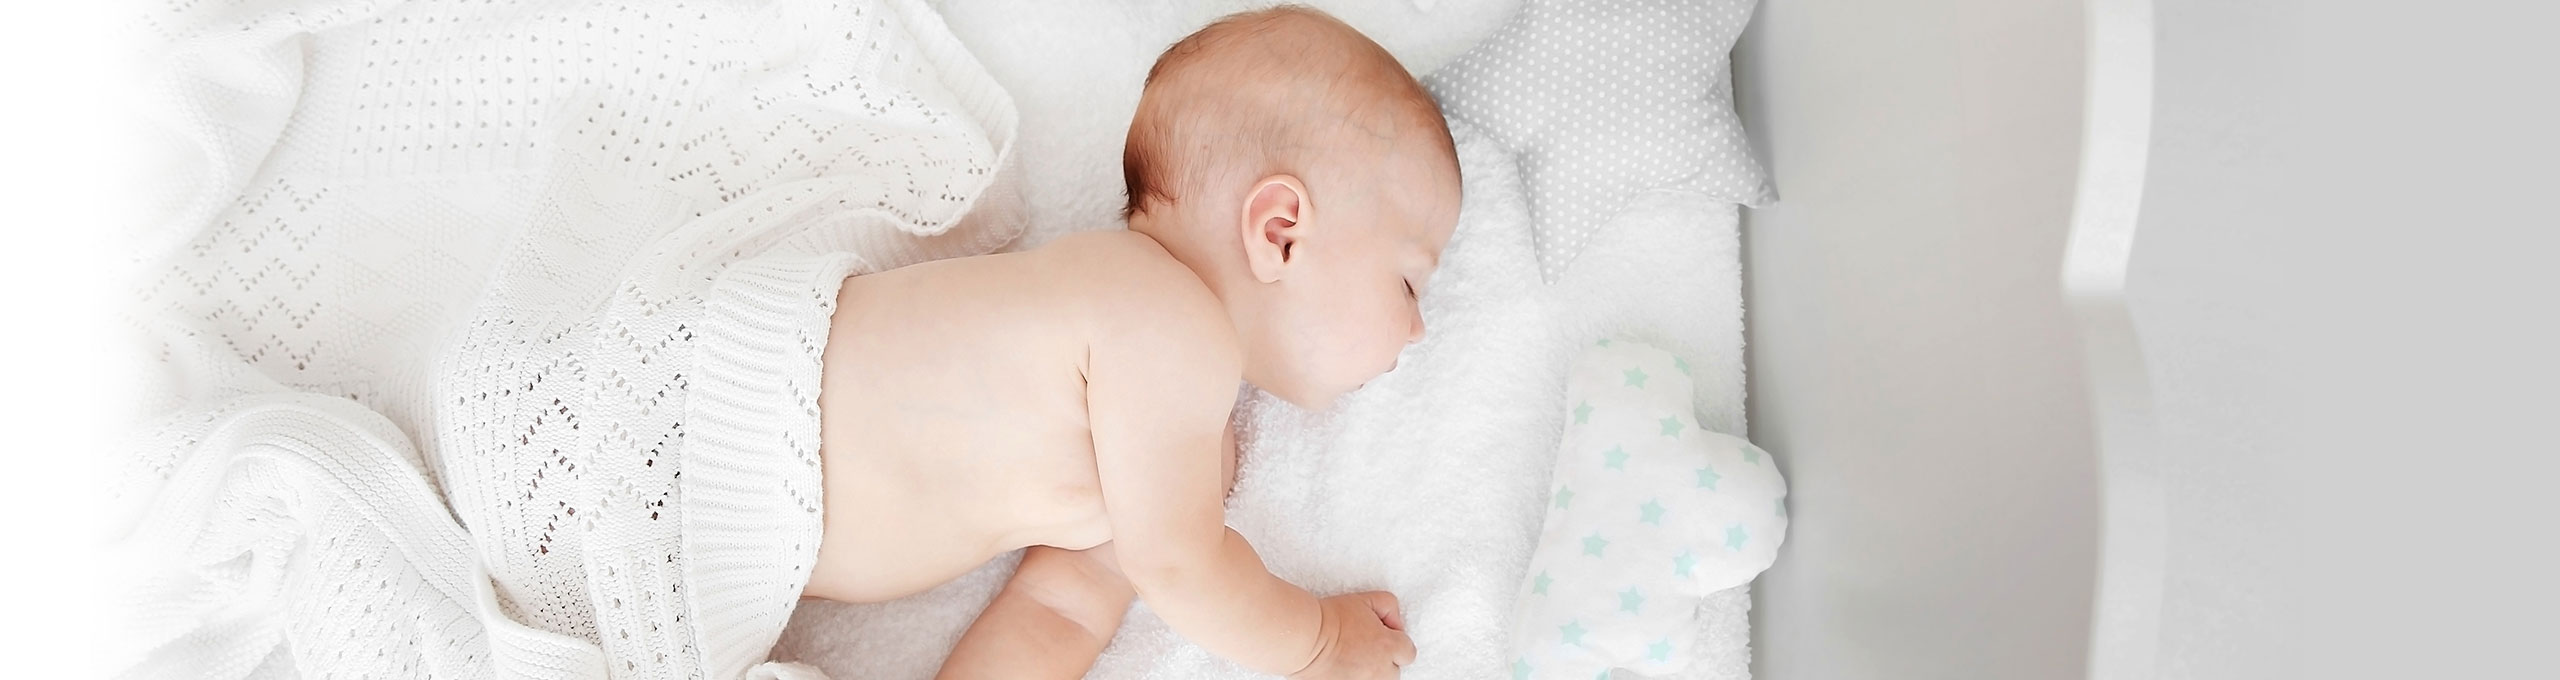 Bebeklerin Kolay Uyuması İçin Öneriler